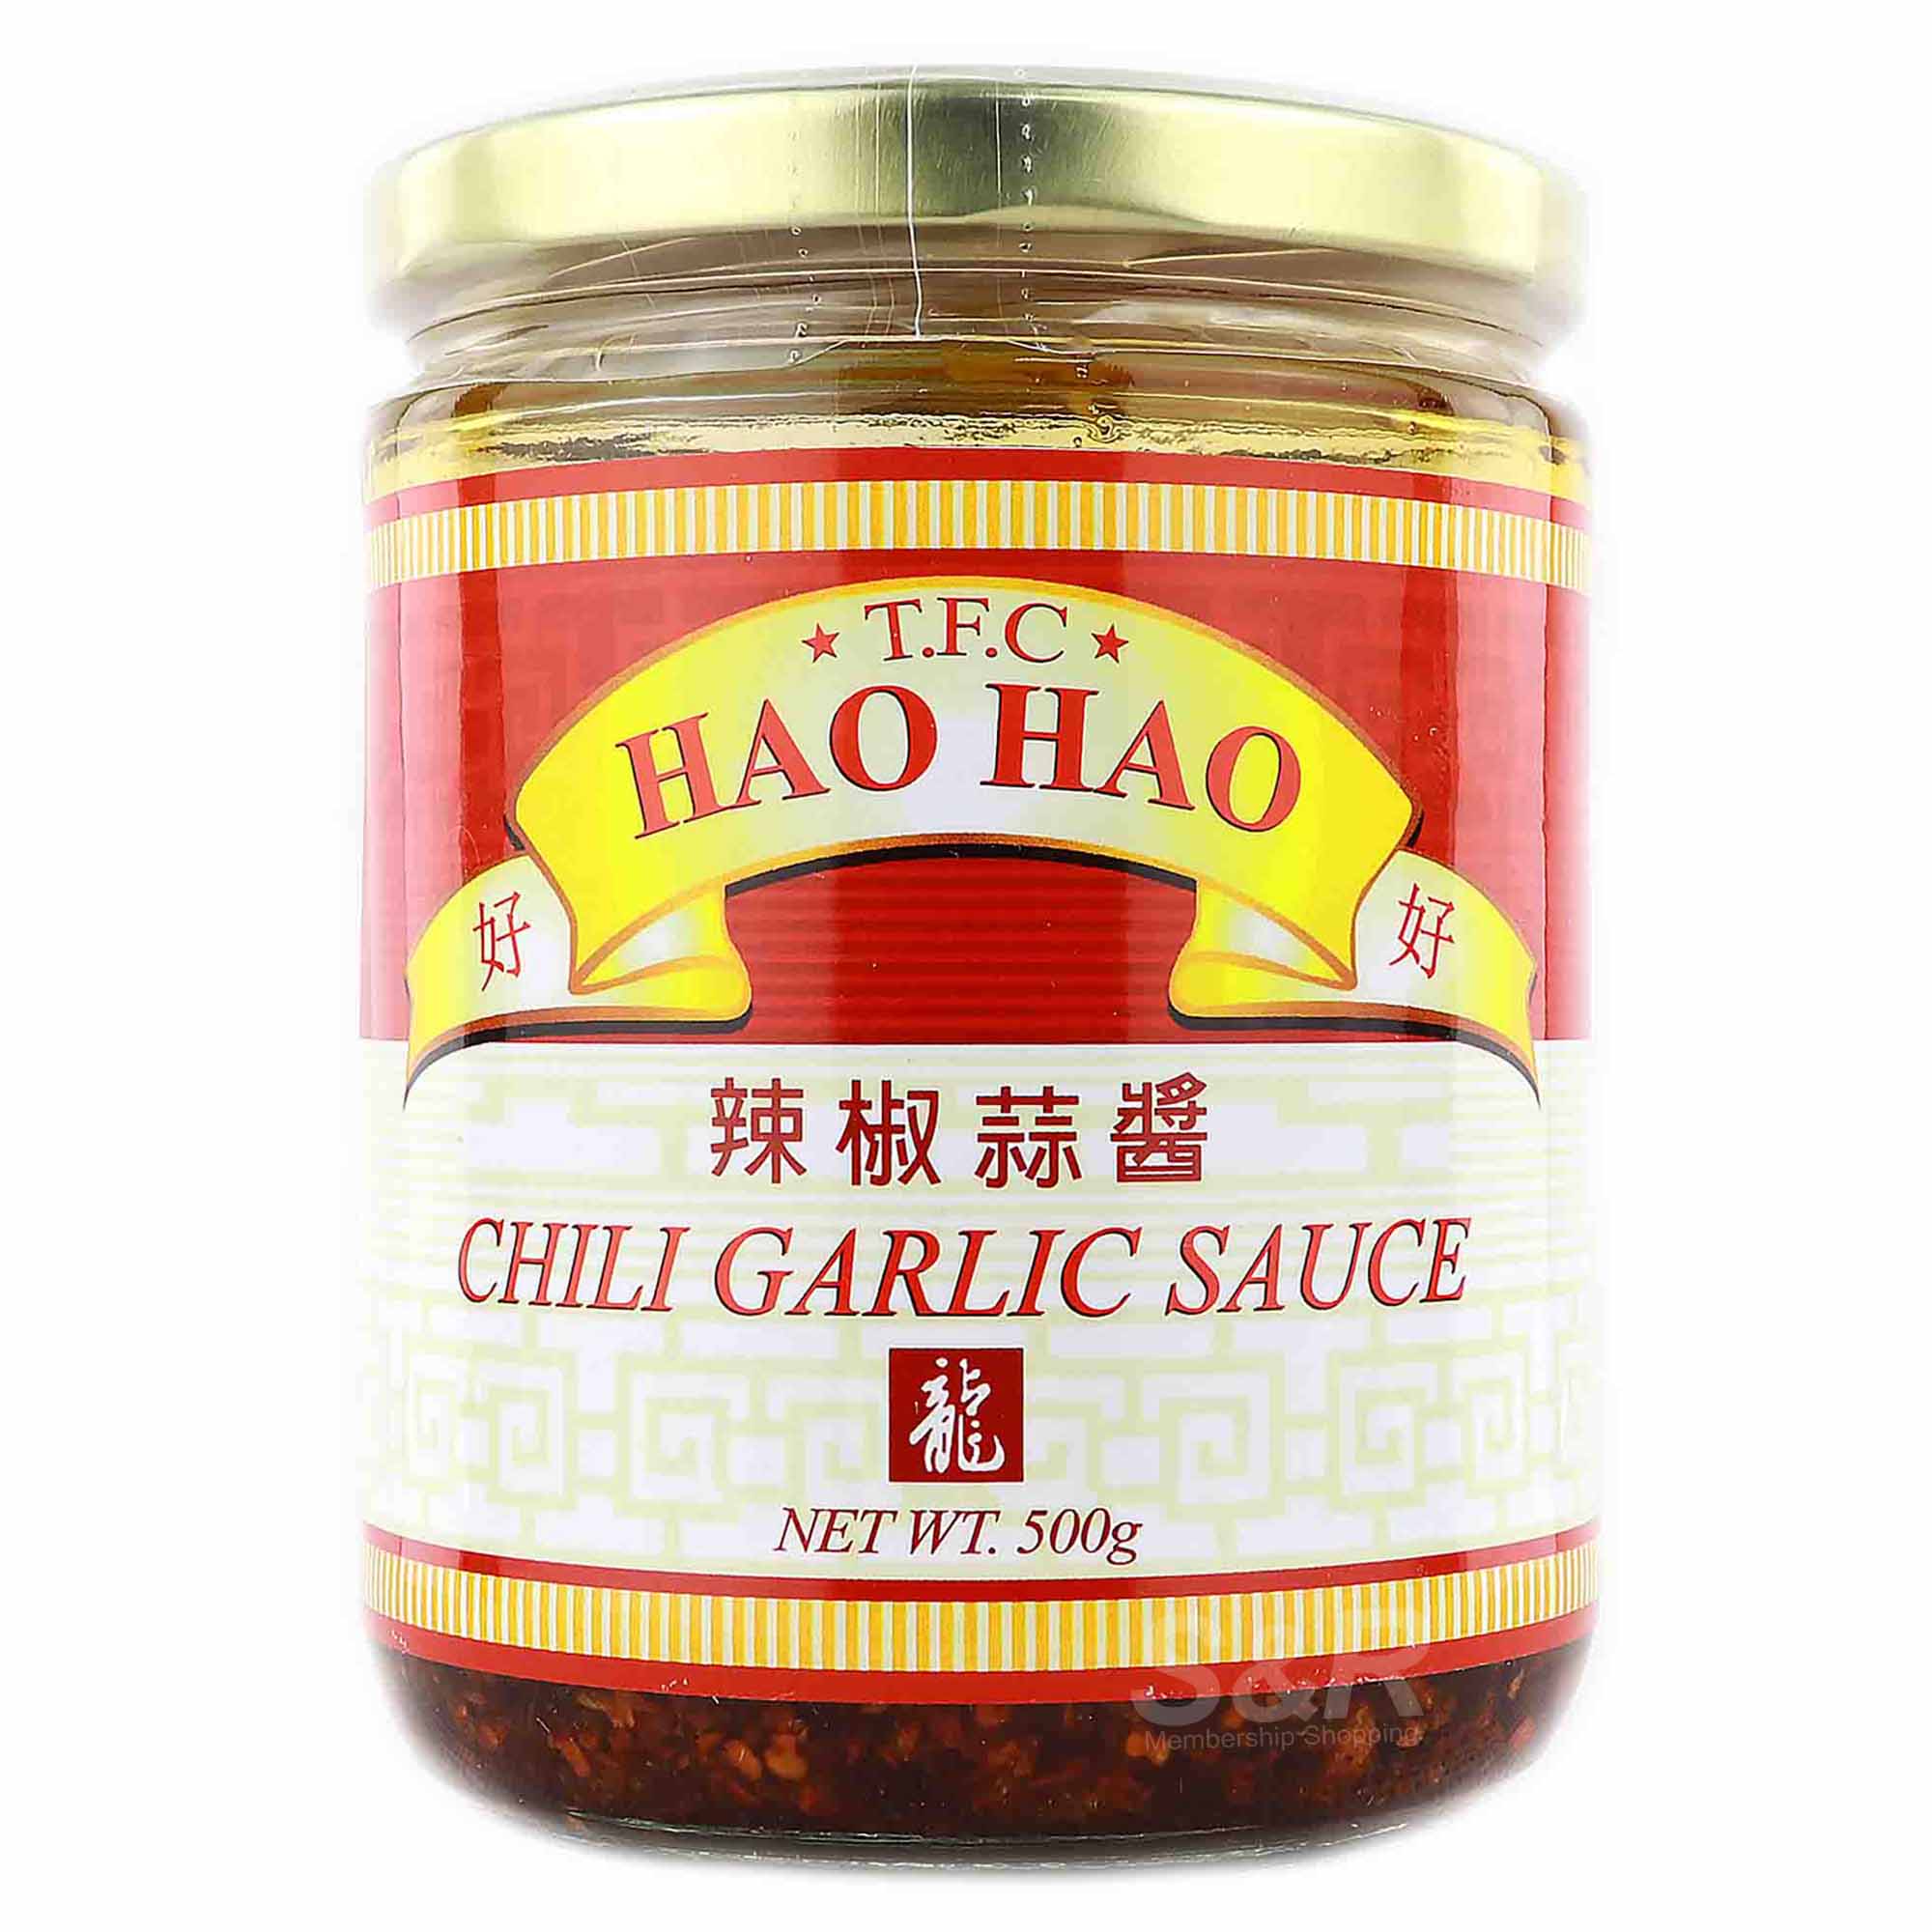 T.F.C. Hao Hao Chili Garlic Sauce 500g